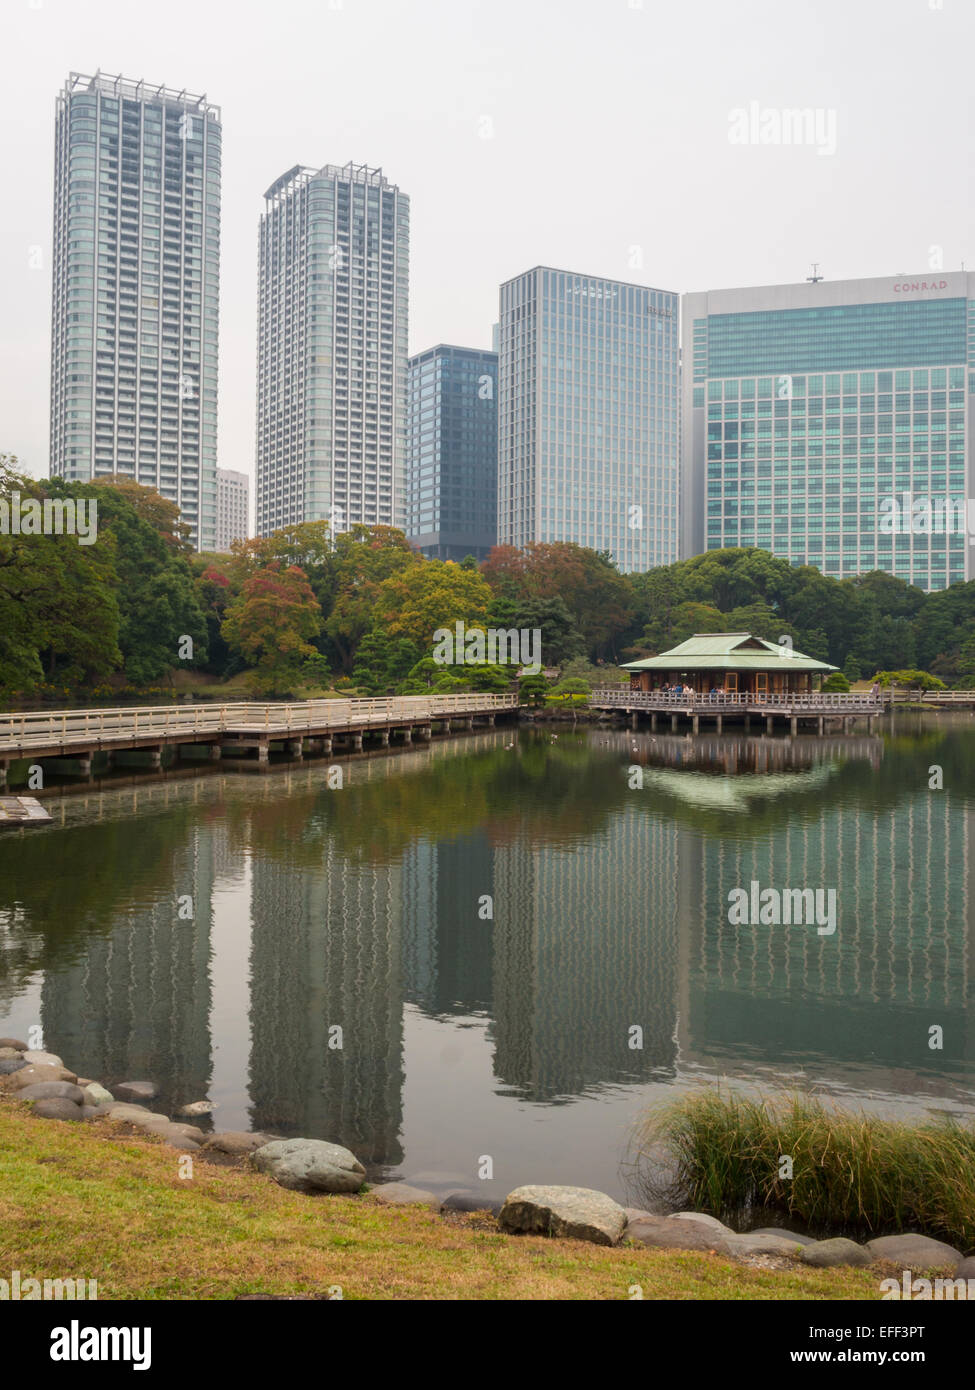 Hama Rikyu Onshi-teien riflette il paesaggio con teahouse, alberi e grattacieli Foto Stock